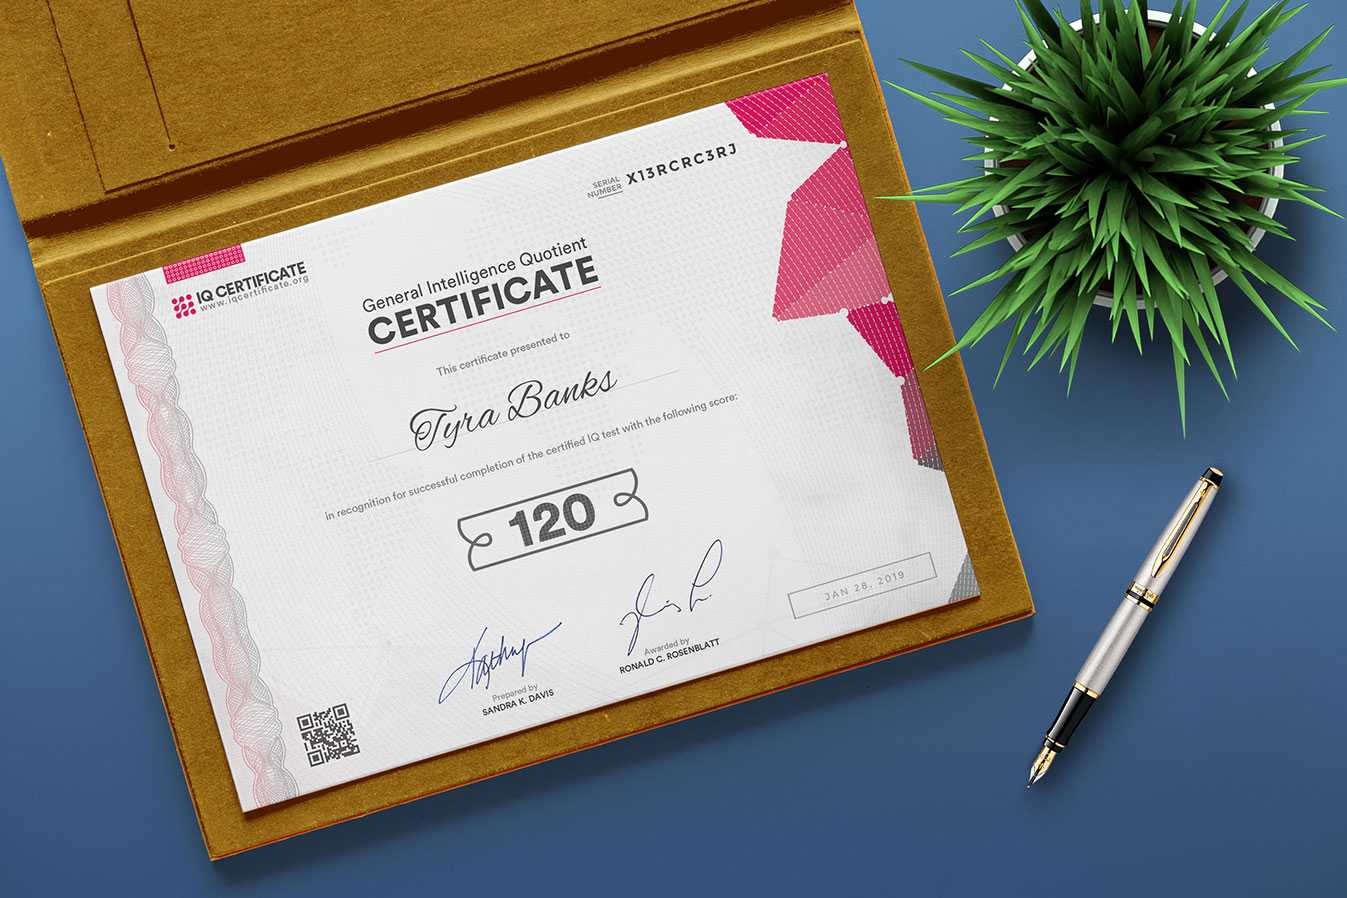 Sample Iq Certificate - Get Your Iq Certificate! In Iq Certificate Template